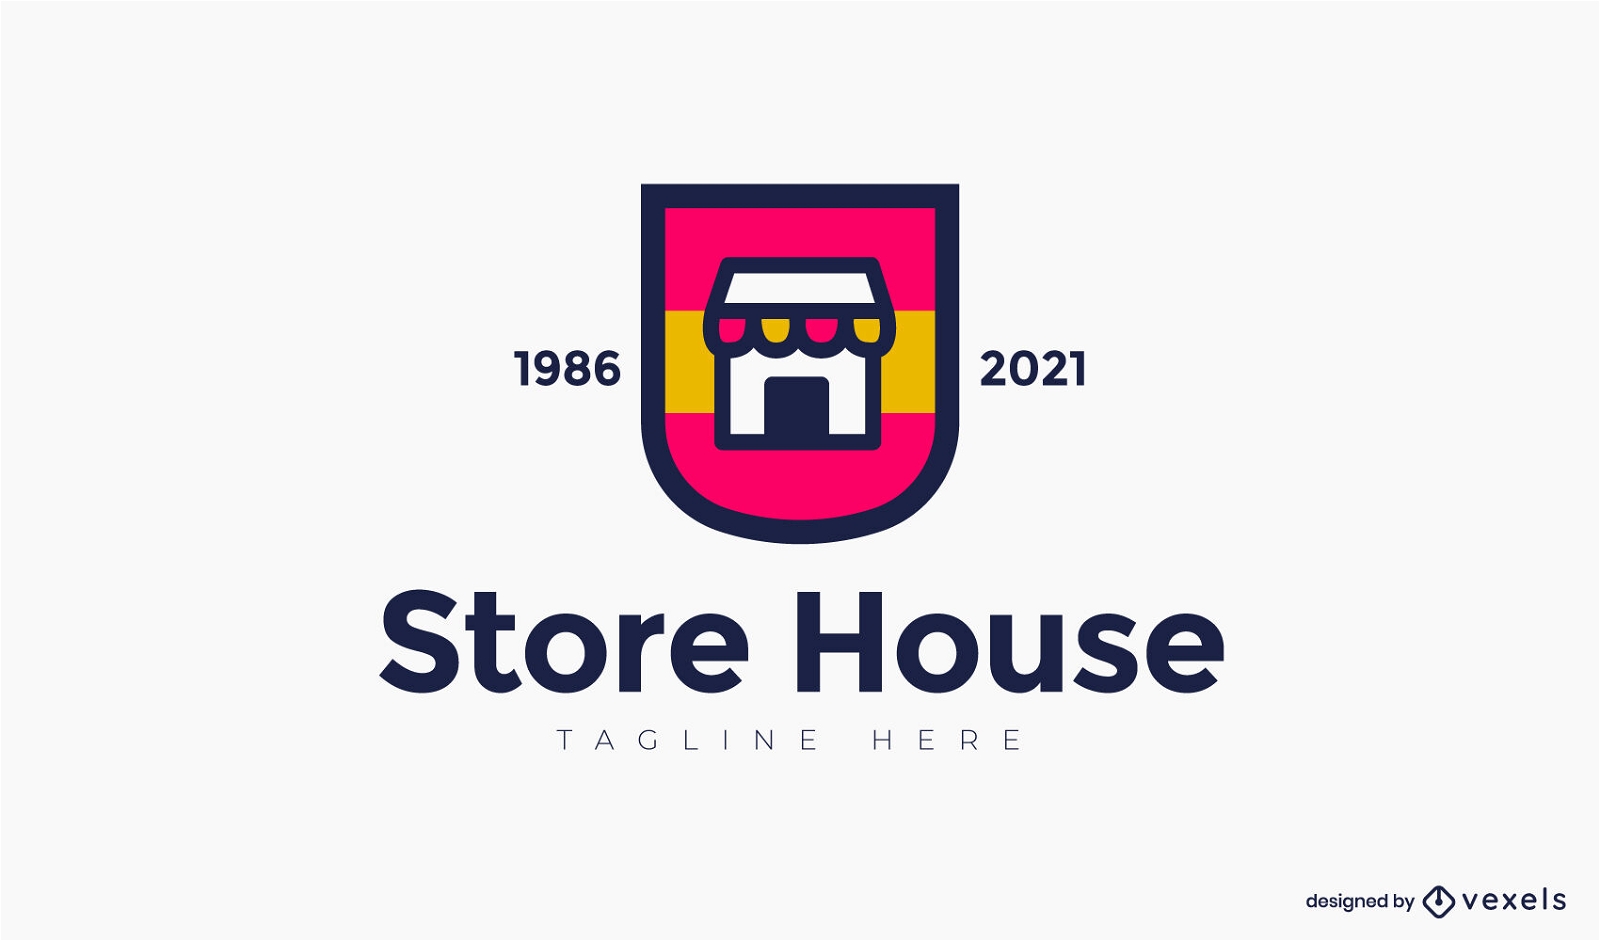 Vorlage für das Logo des Farbstrich-Shops